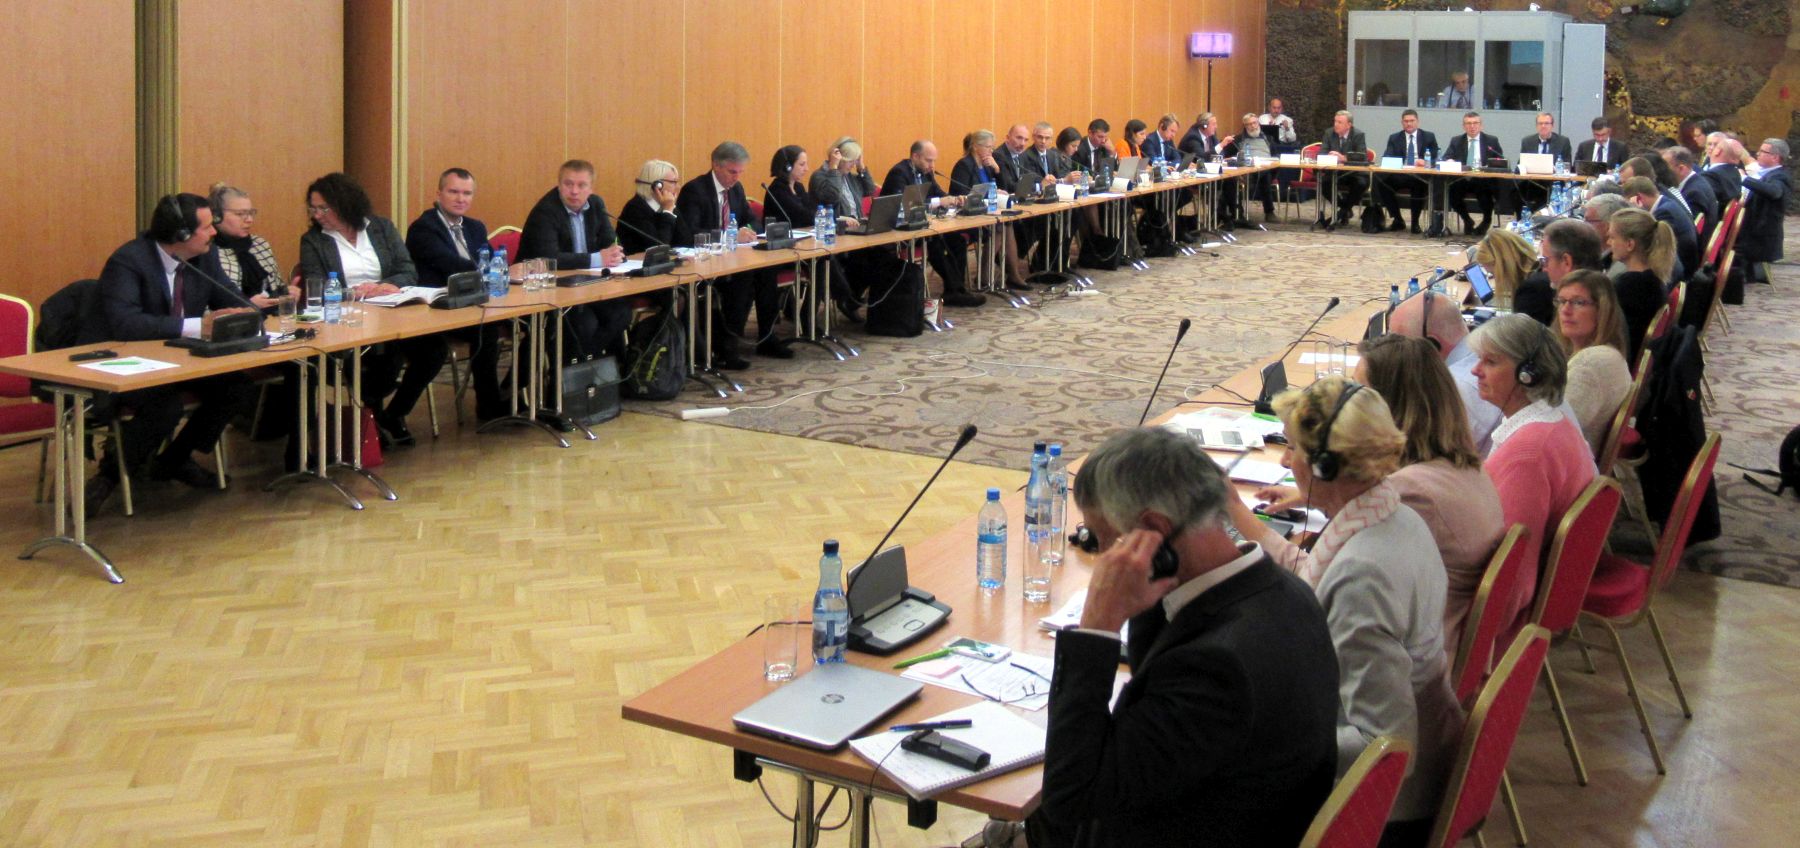 Spotkanie grupy ekspertów ds. ASF regionu Europy Środkowo-Wschodniej